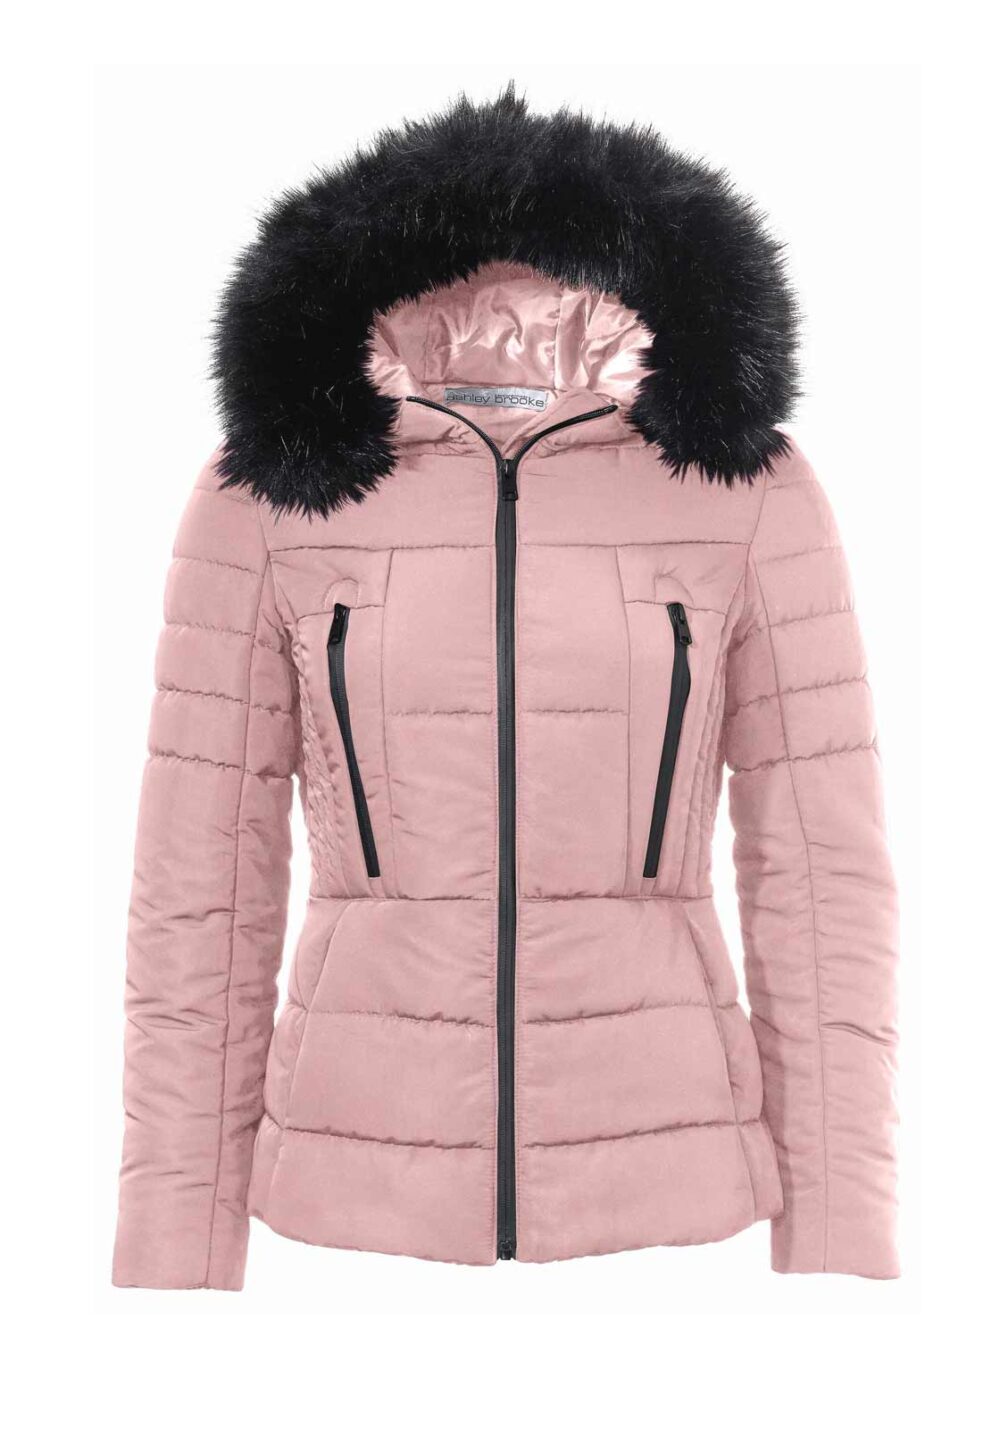 Ashley Brooke Damen Jacke gesteppt Winterjacke warm Steppjacke mit Webpelz rosa #missforty#